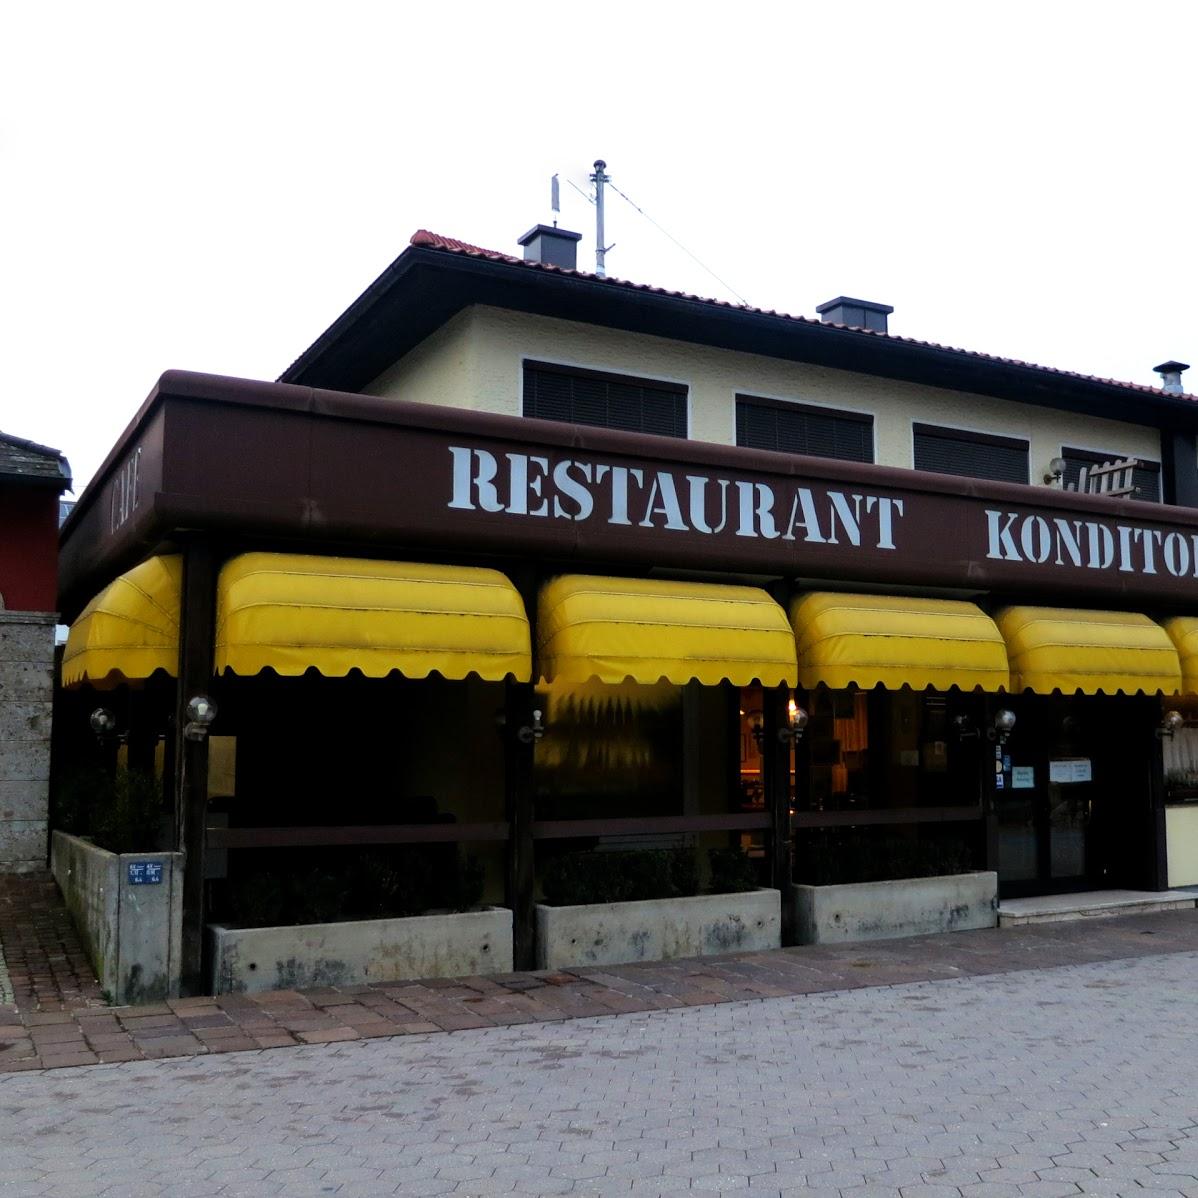 Restaurant "Friedrich Martschin RestaurantbetriebsgmbH" in Gunskirchen